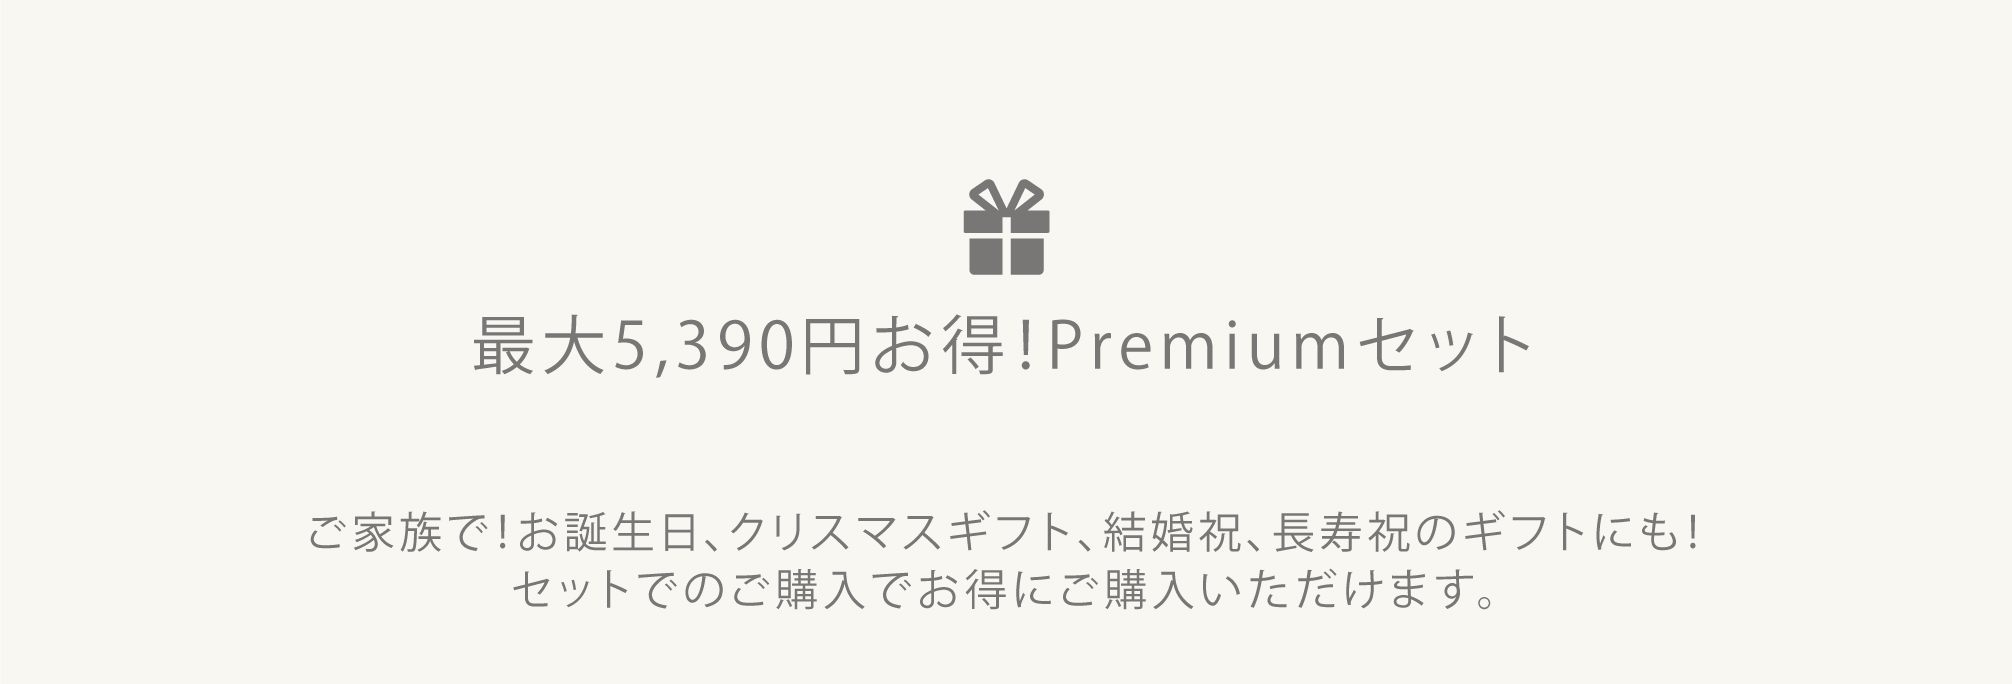 YOKONEGU Premium セット